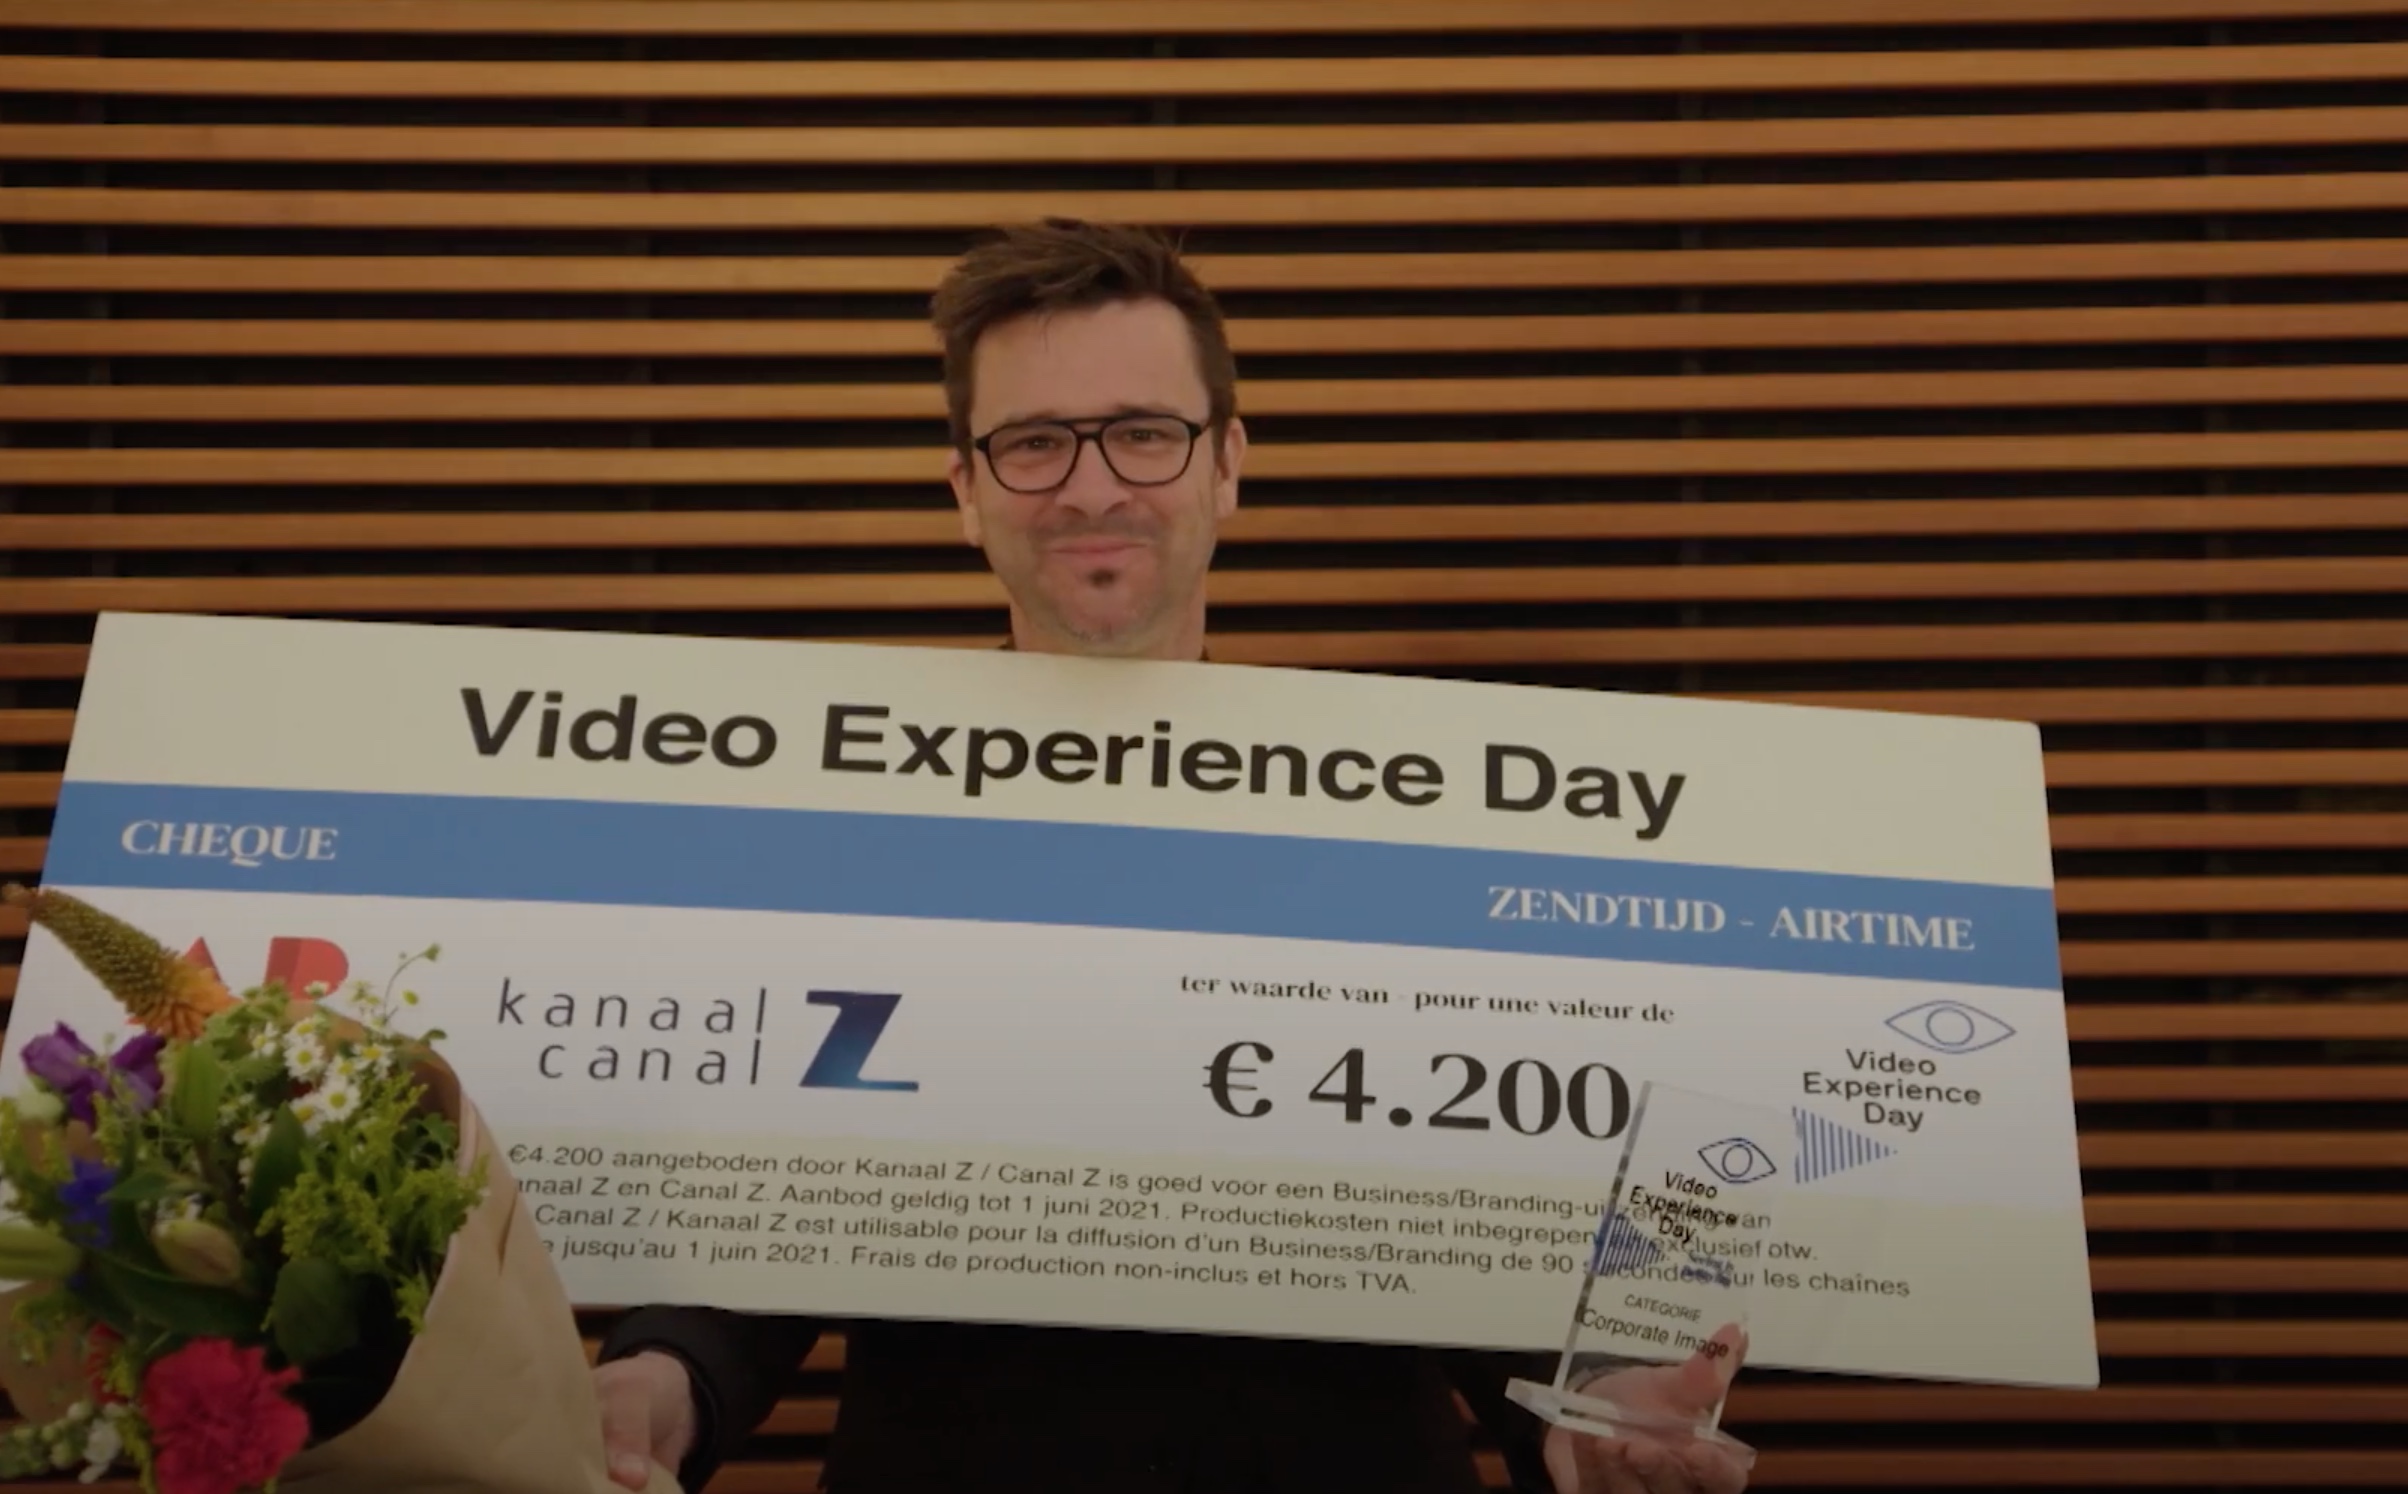 Le Video Experience Day cherche pour la 23e fois les meilleures vidéos d'entreprise